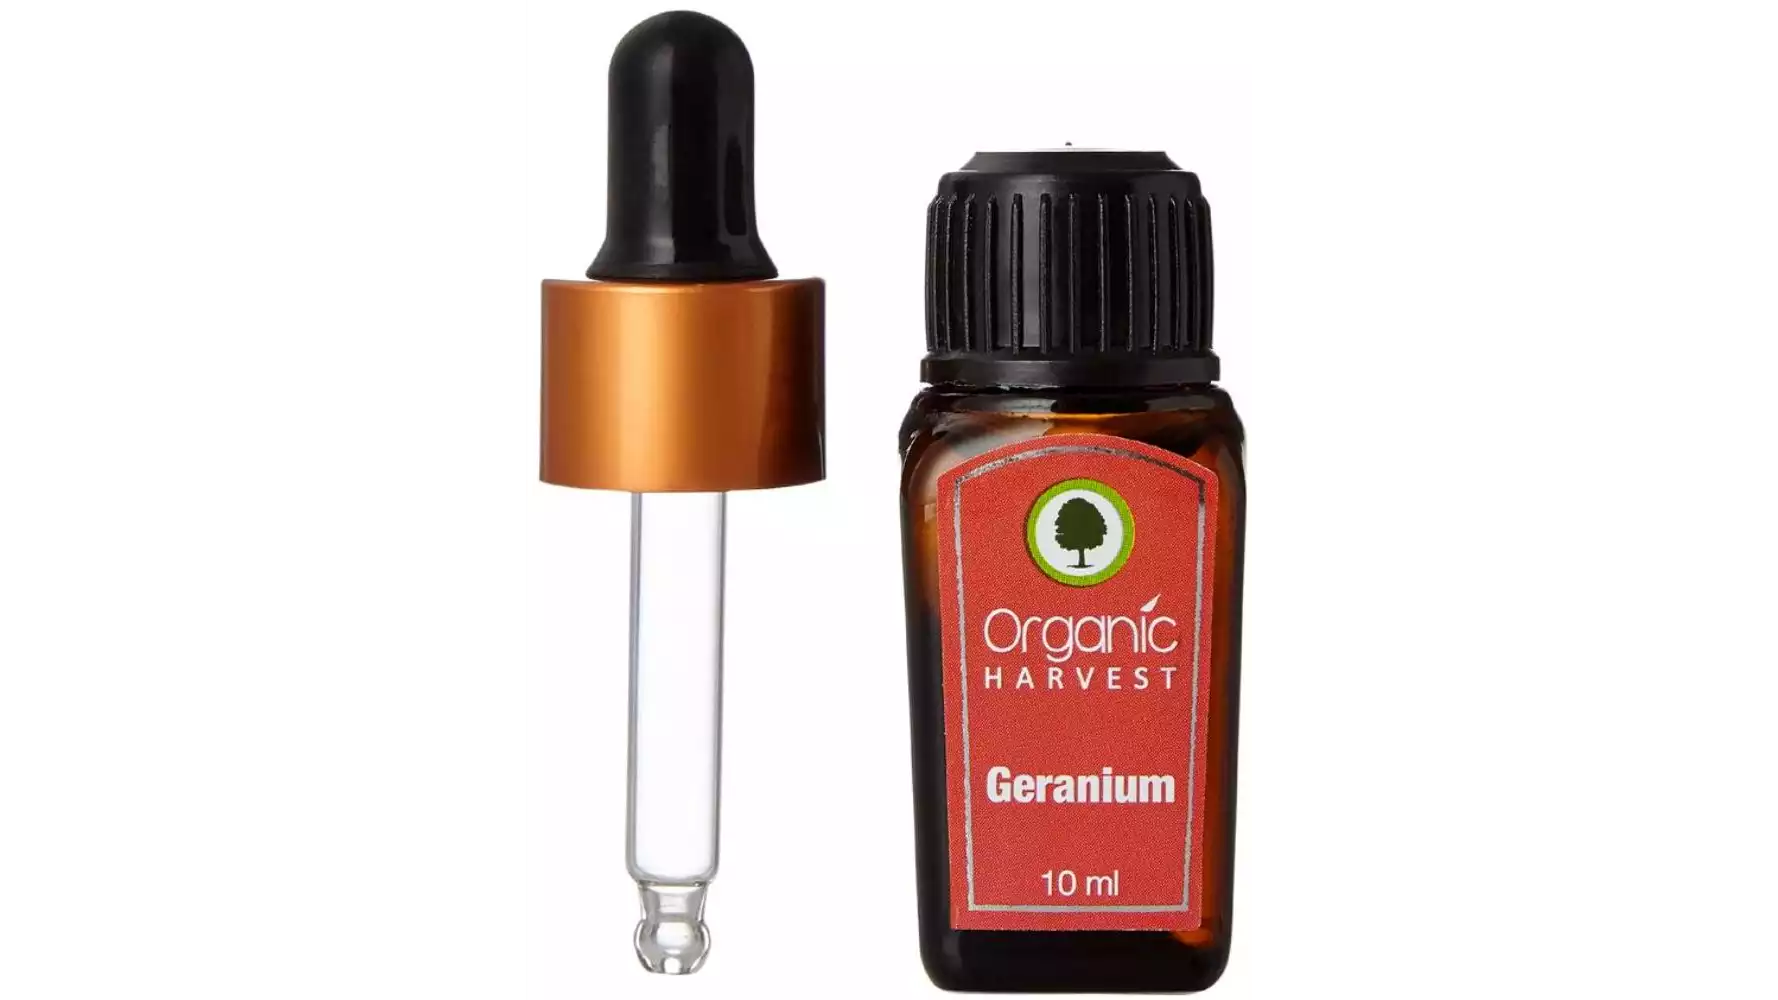 Organic Harvest Geranium (10ml)